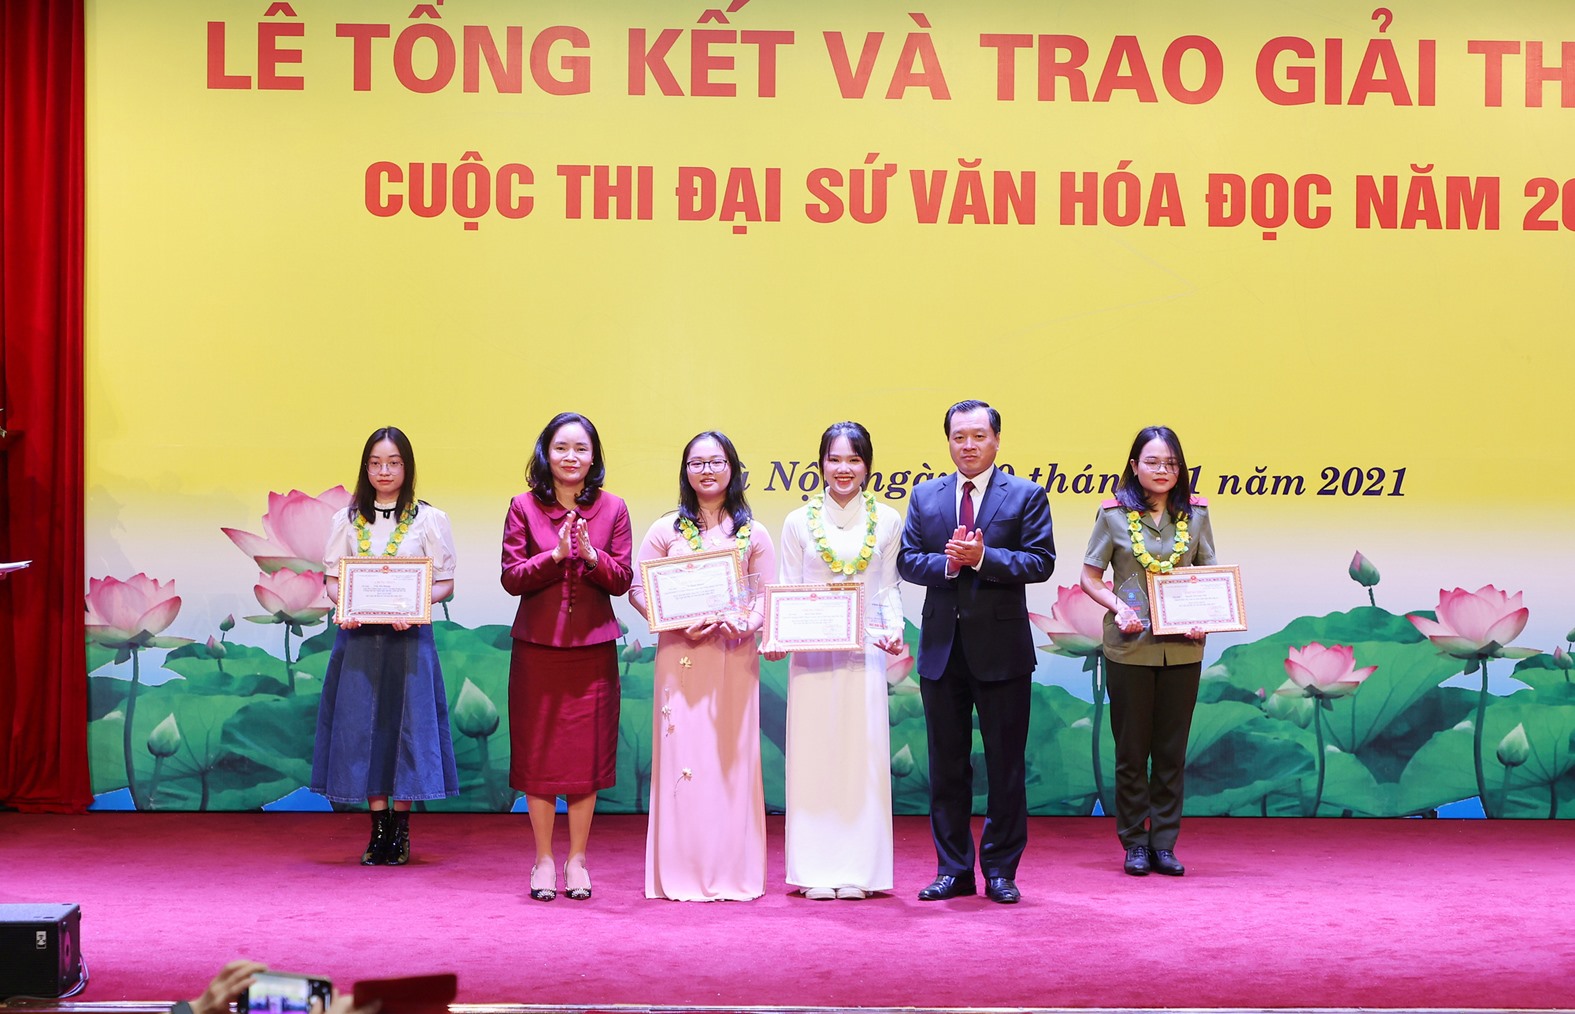 Thứ trưởng Bộ Văn hóa, Thể thao và Du lịch Trịnh Thị Thủy và Vụ trưởng Vụ Thư viện Phạm Quốc Hùng trao kỷ niệm chương và giấy chứng nhận Đại sứ Văn hóa đọc năm 2021 cho các thí sinh -Ảnh: TL